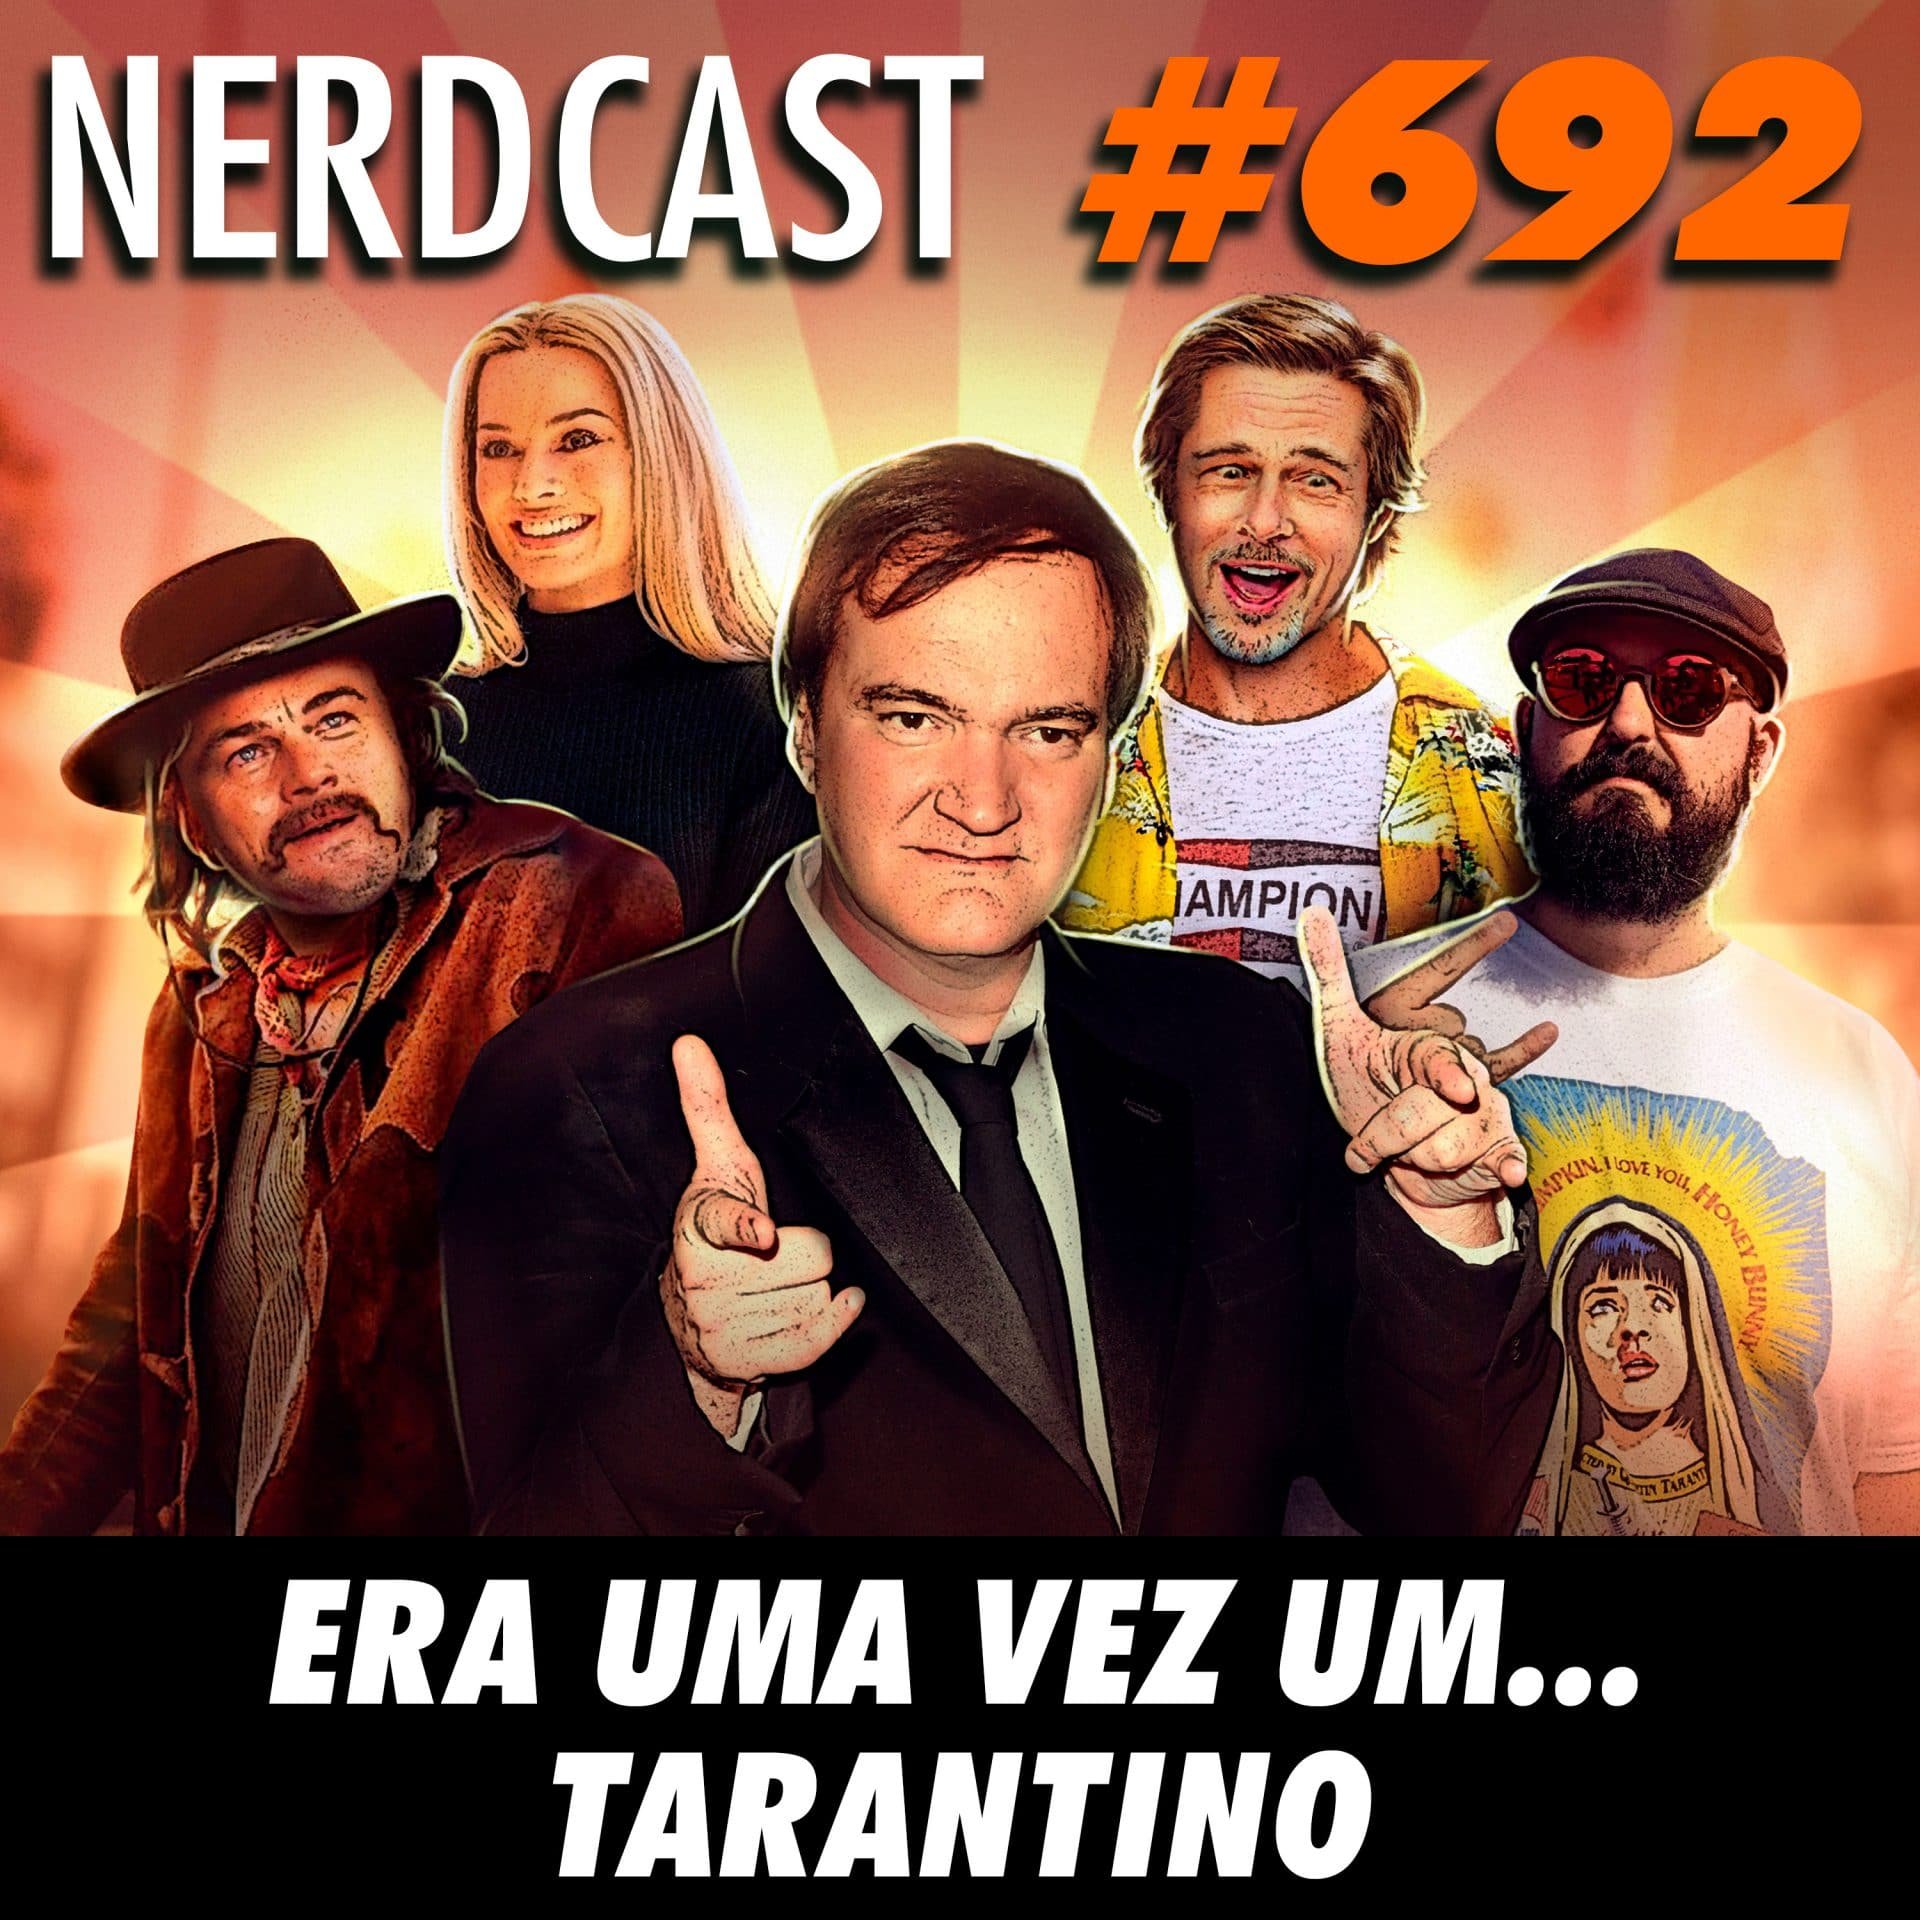 NerdCast 692 - Era uma vez um… Tarantino